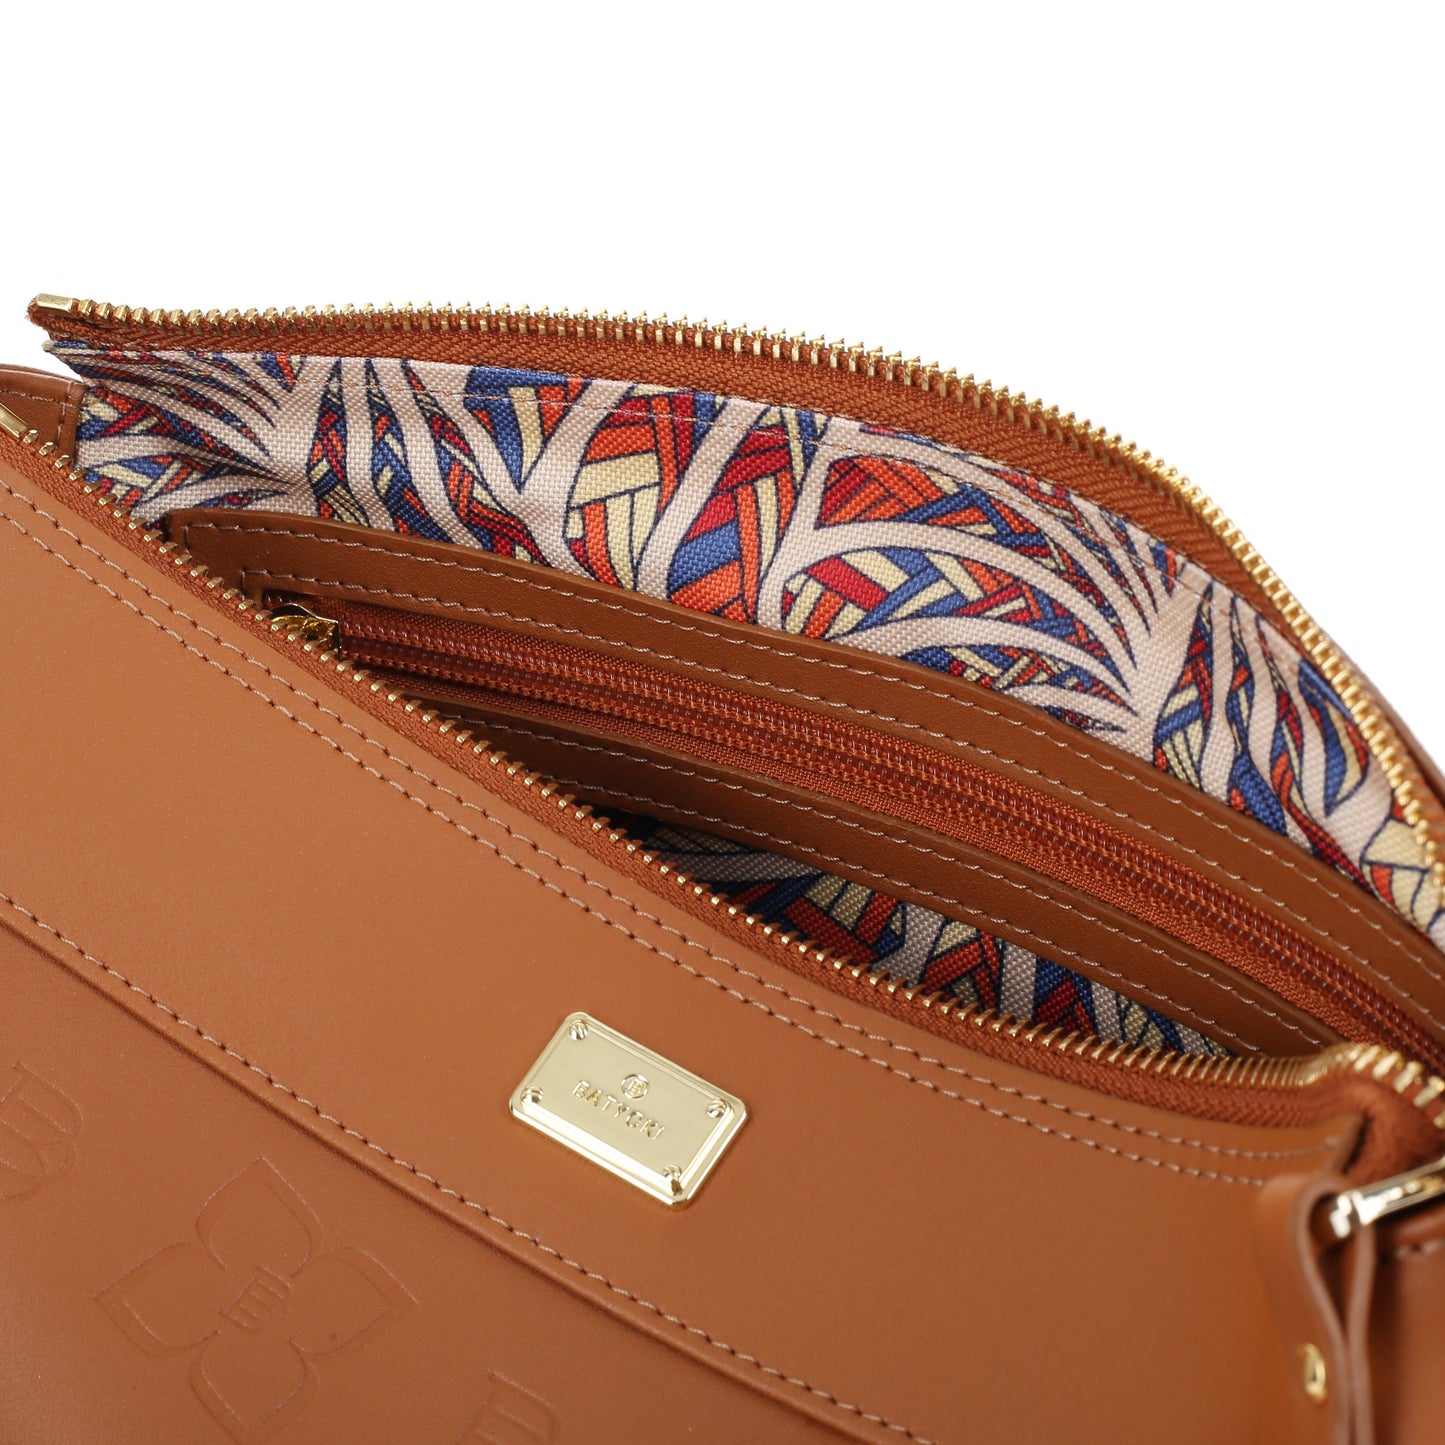 LEVRE NAPA COGNAC women's leather handbag